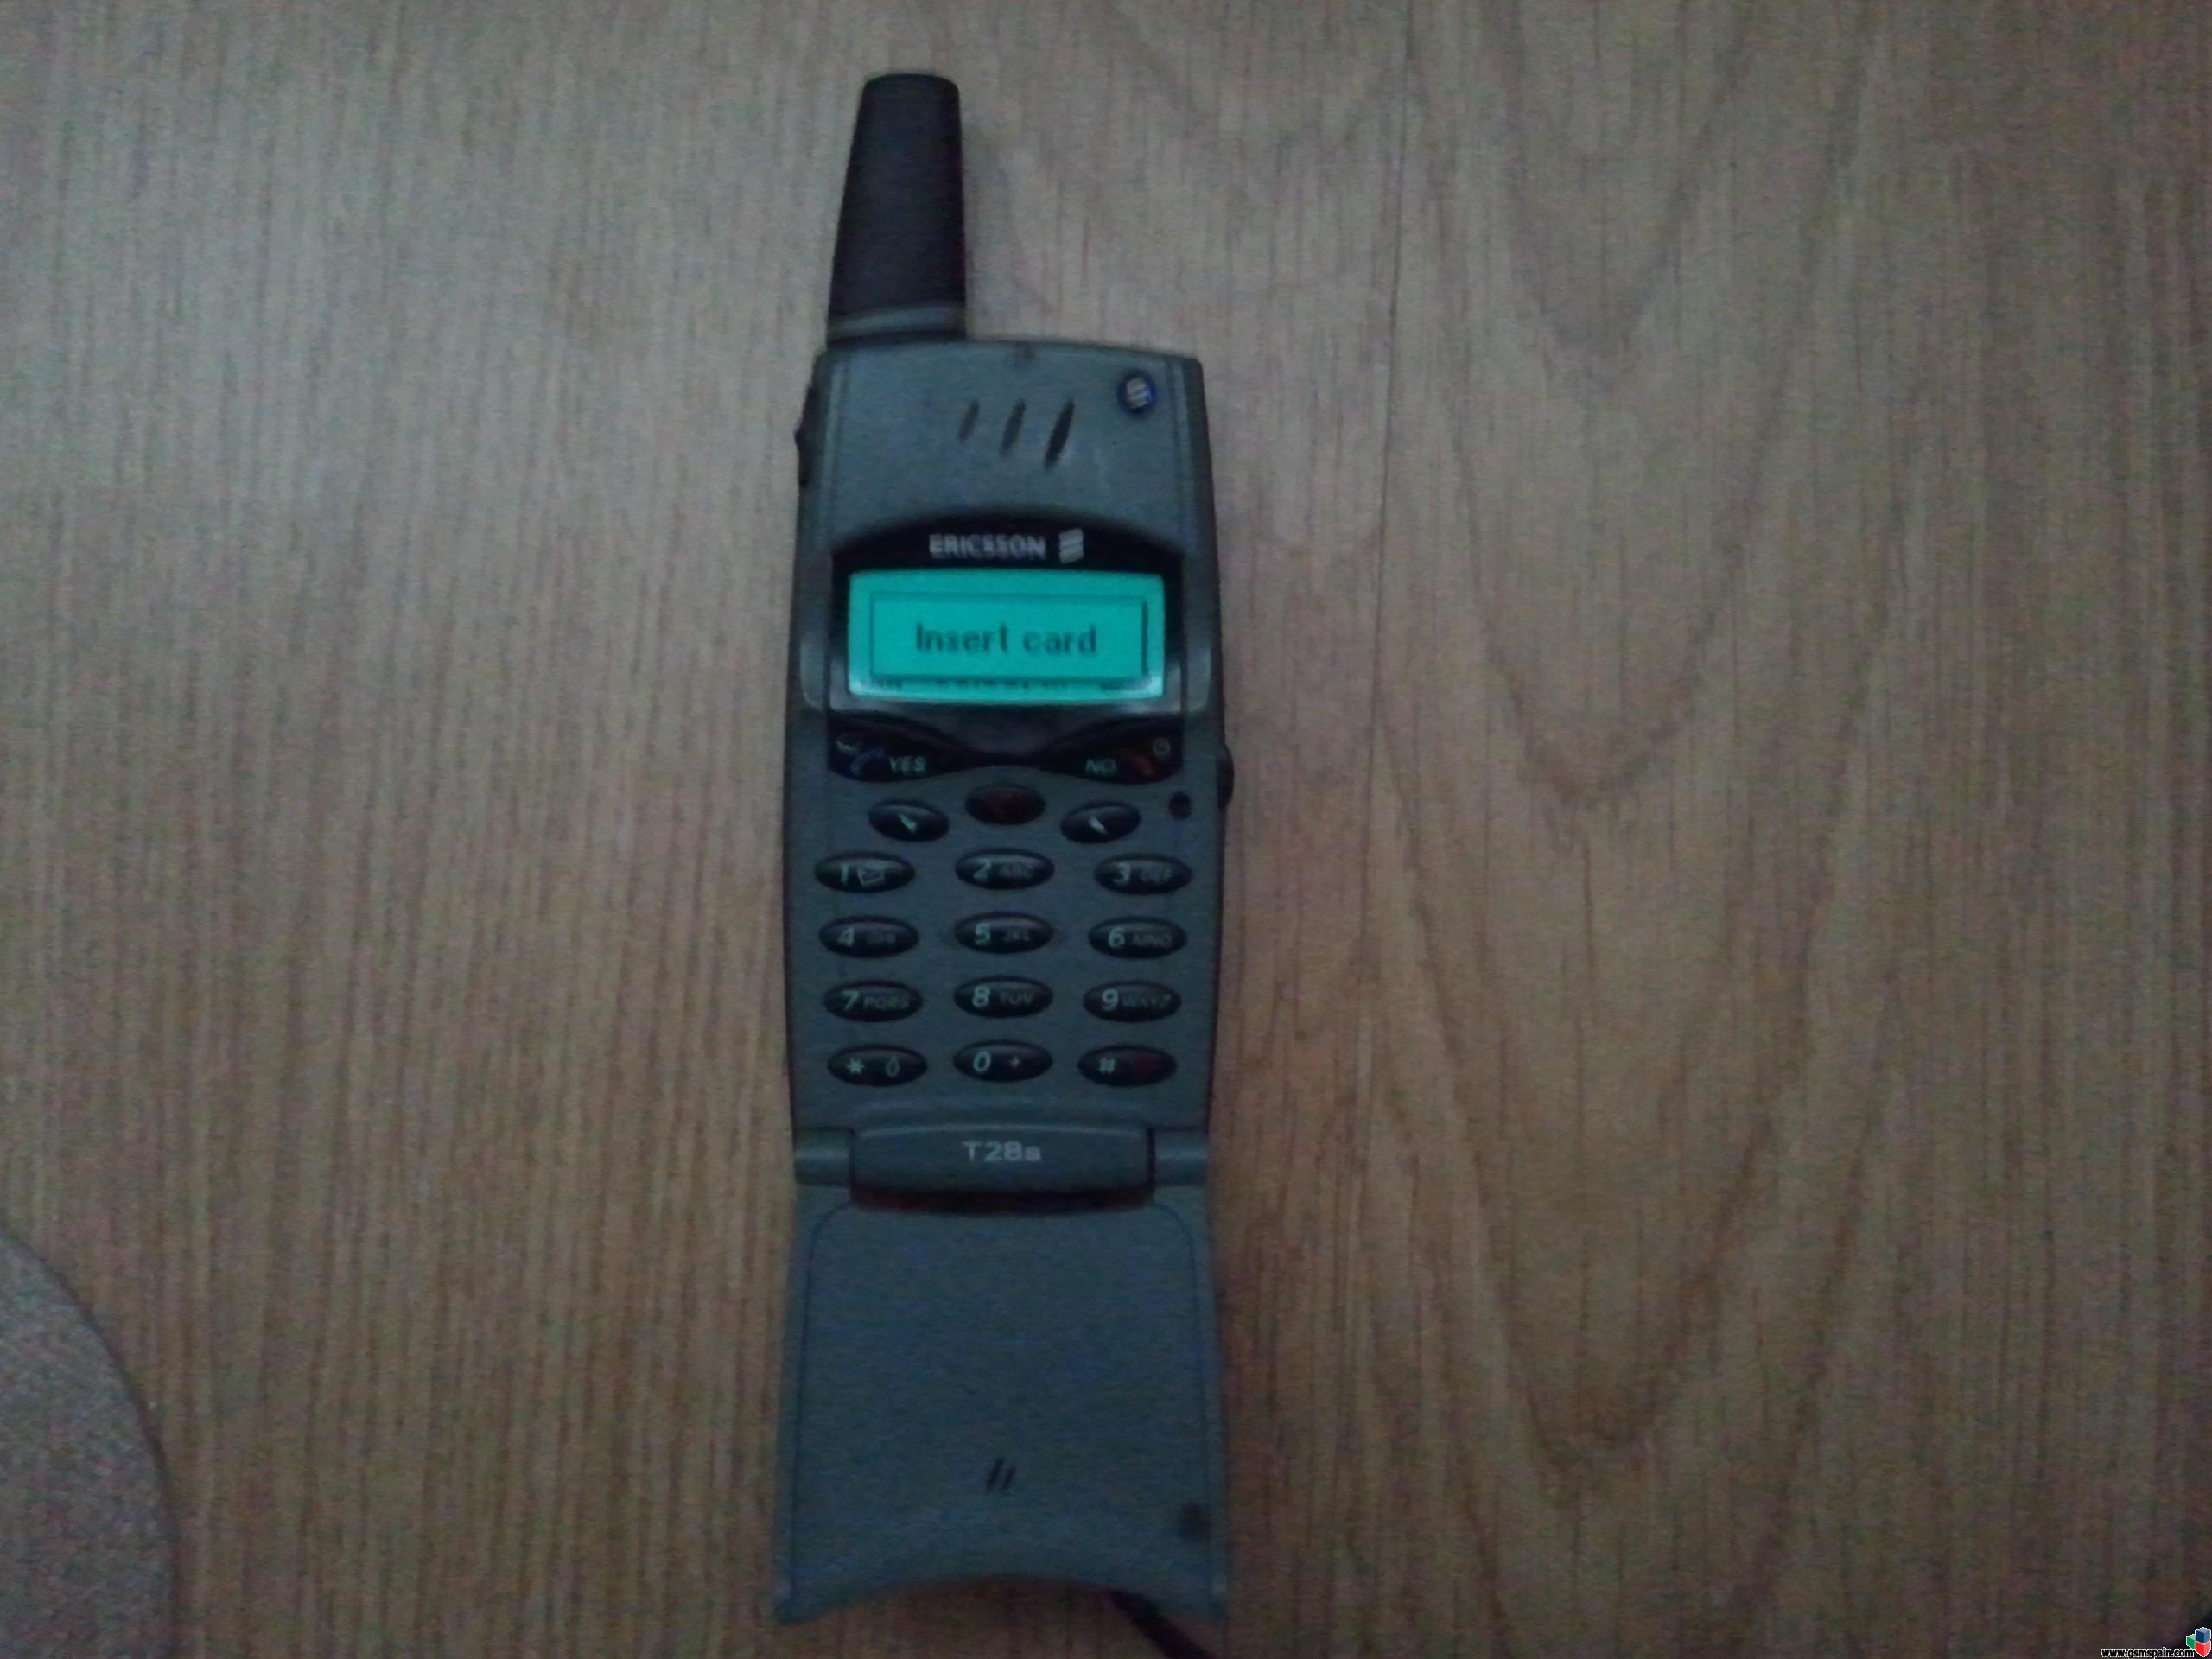 A alguien le interesa una Sony Ericsson T28S??